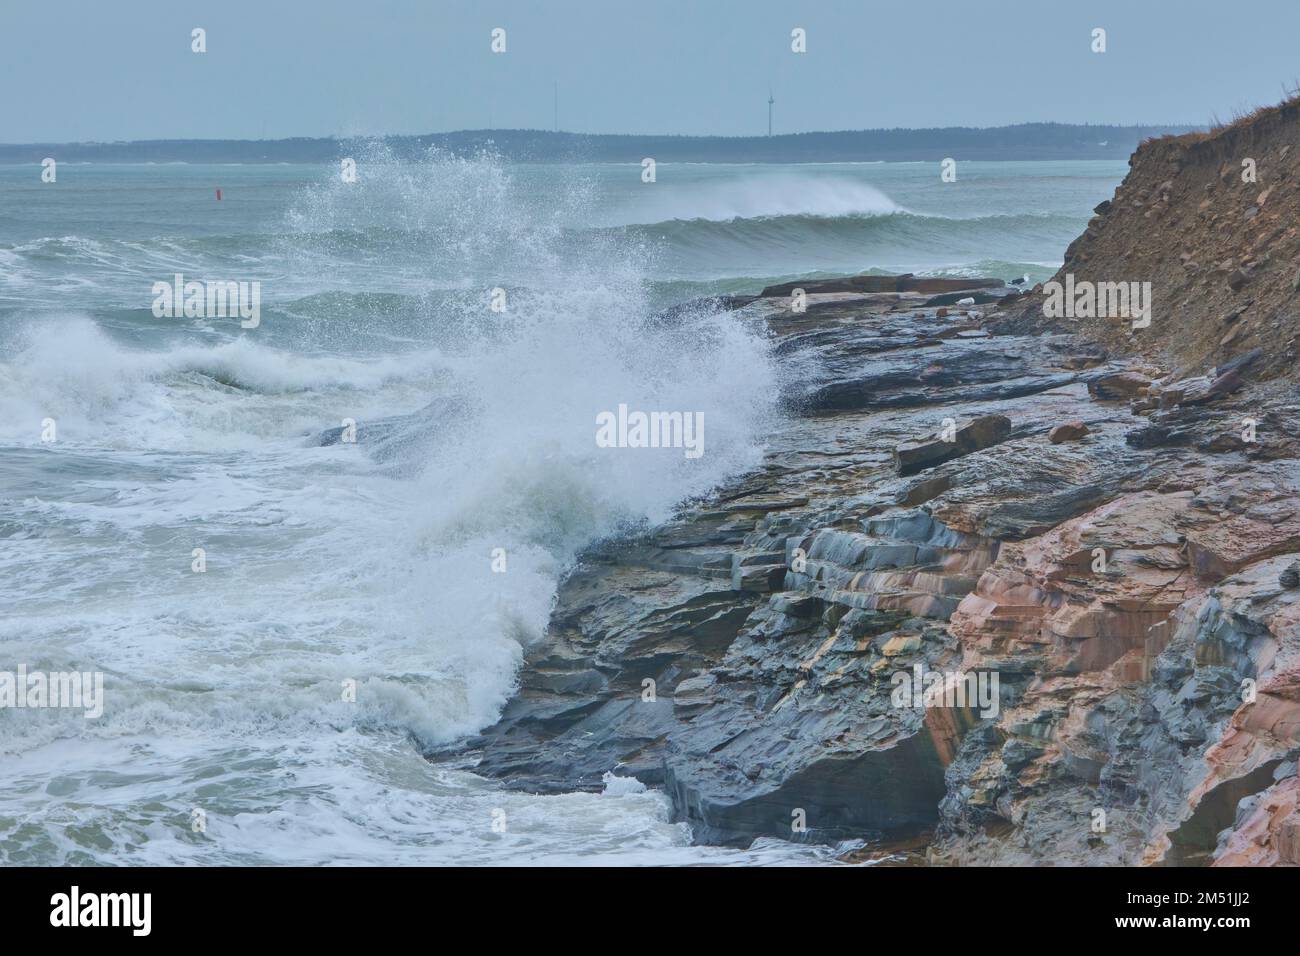 Onde massicce battete la costa vicino a Glace Bay Cape Breton dopo una tempesta atlantica di fine dicembre. Foto Stock